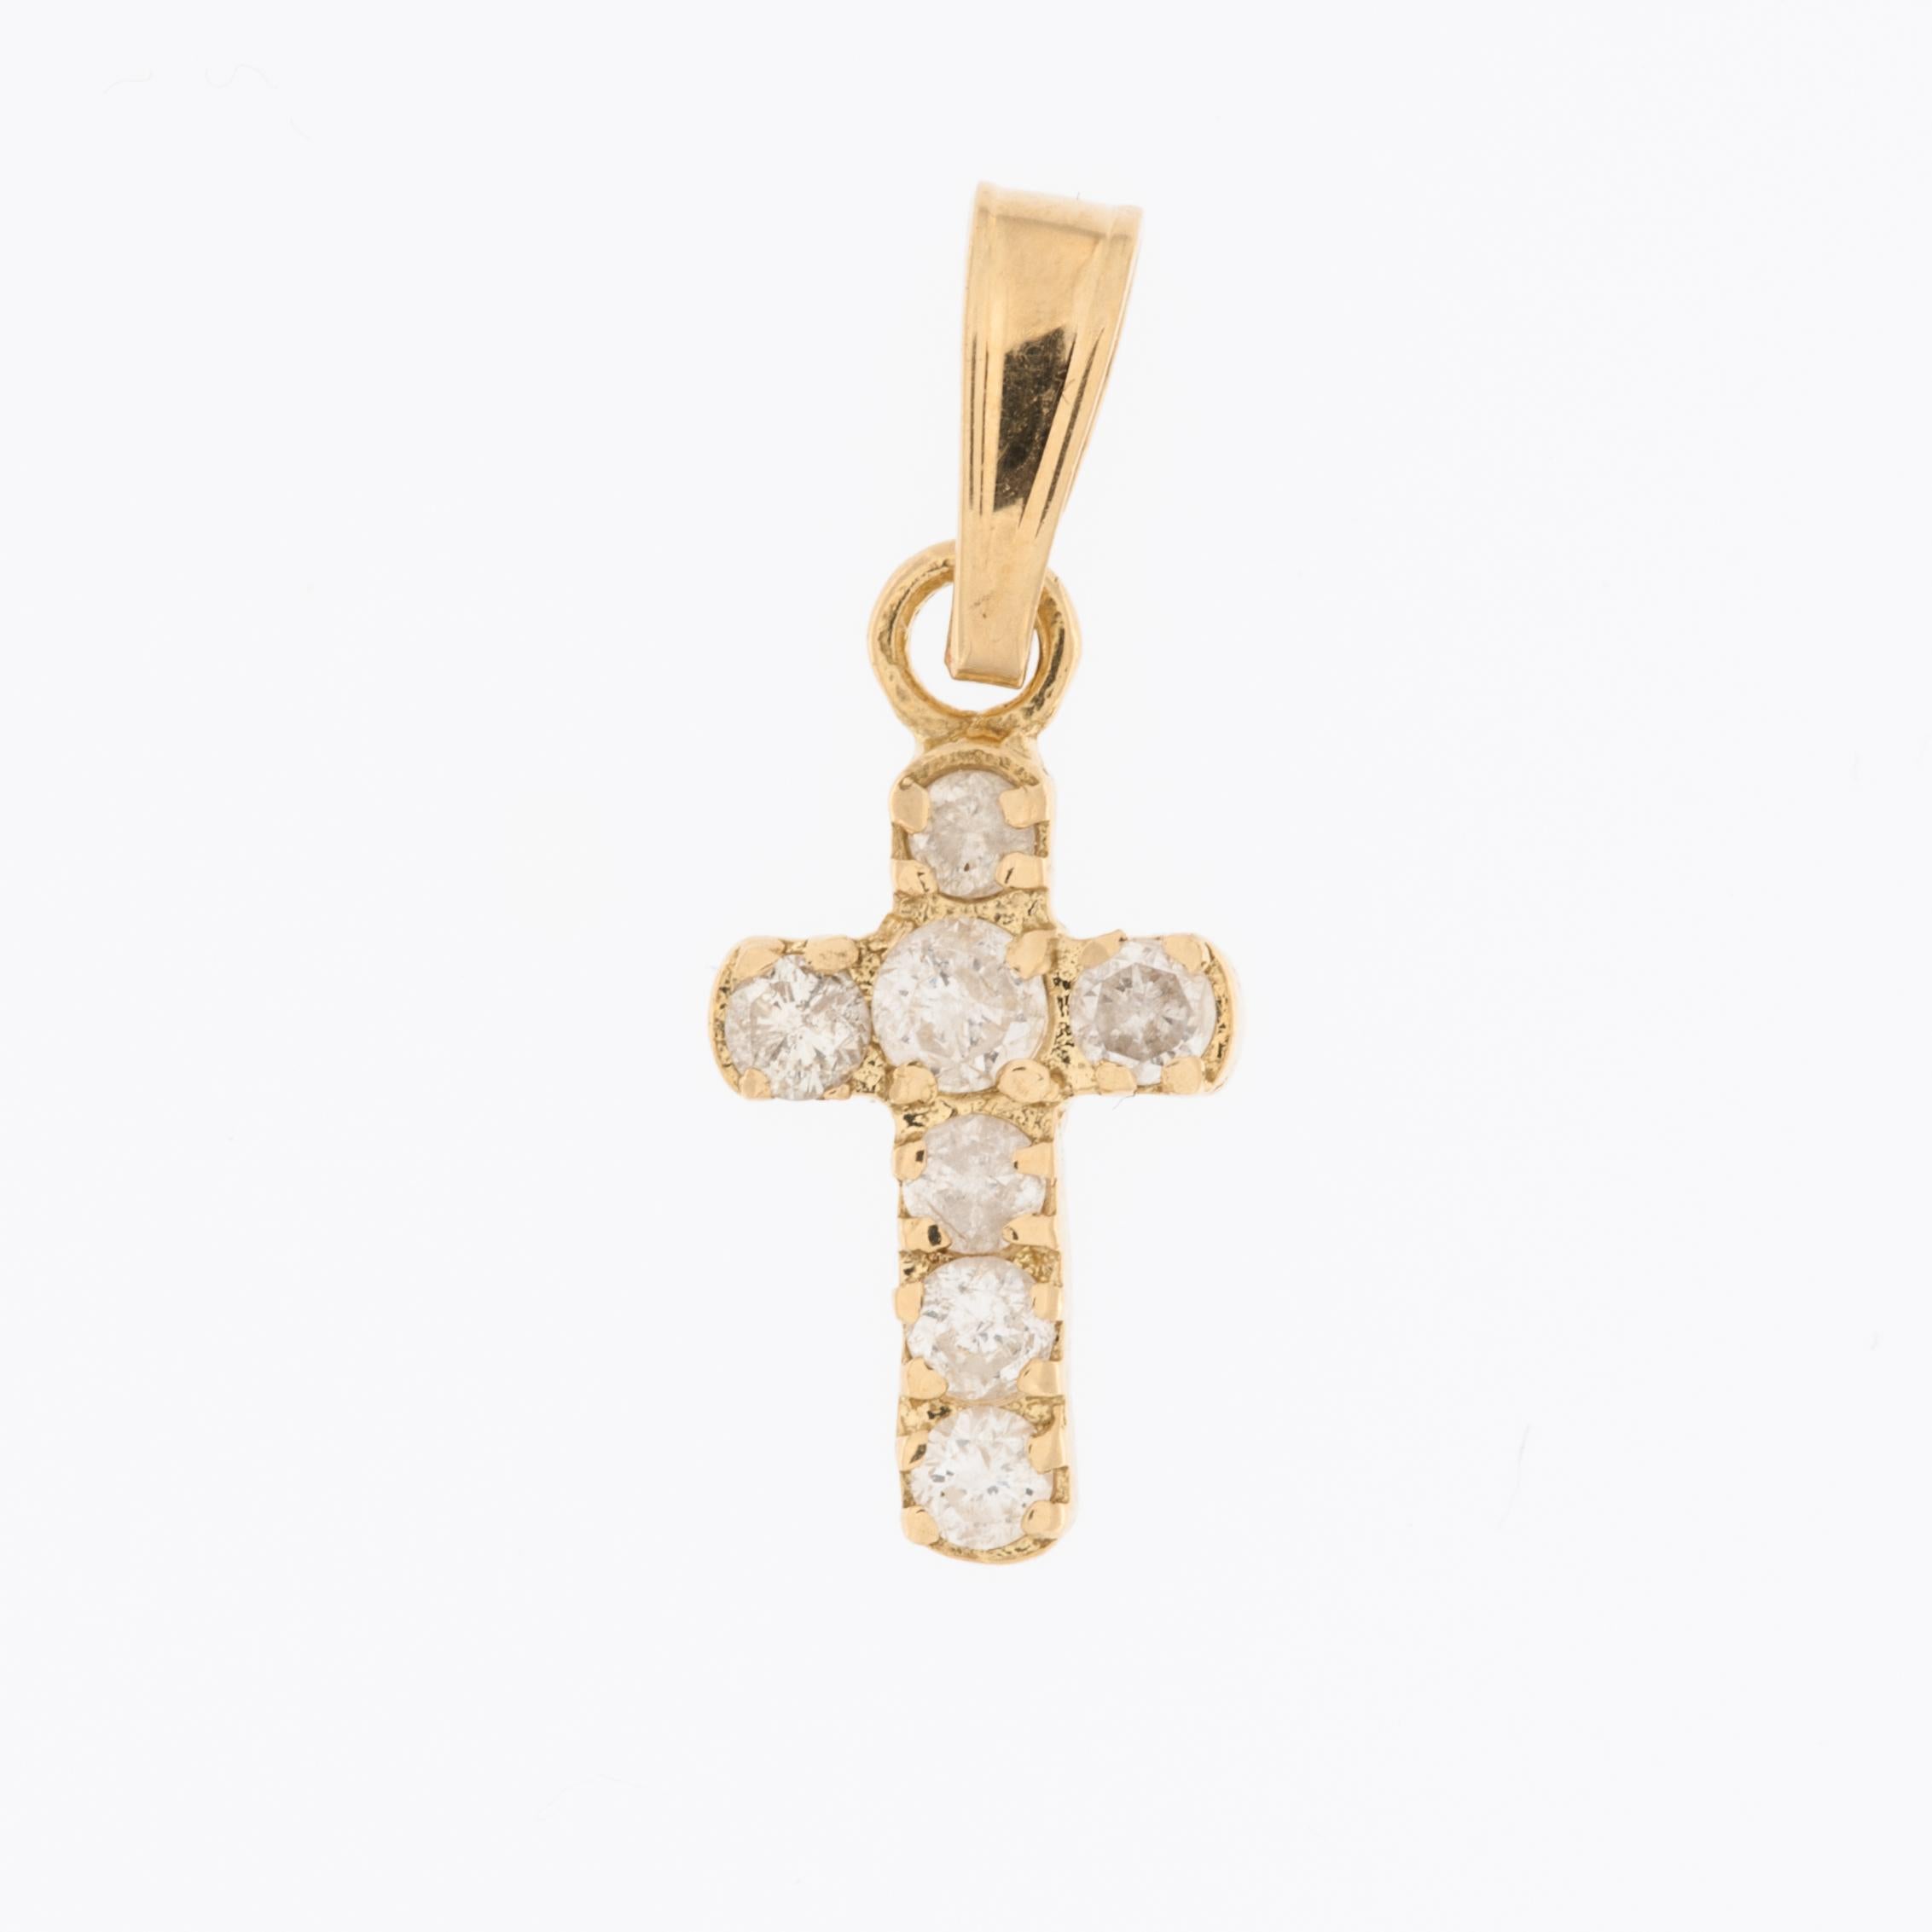 La croix française en or jaune 18kt avec diamants est un bijou élégant. 

Ce pendentif en forme de croix est réalisé en or jaune 18 carats, connu pour sa couleur riche et chaude. 
Le design de ce pendentif en forme de croix est classique, alliant la